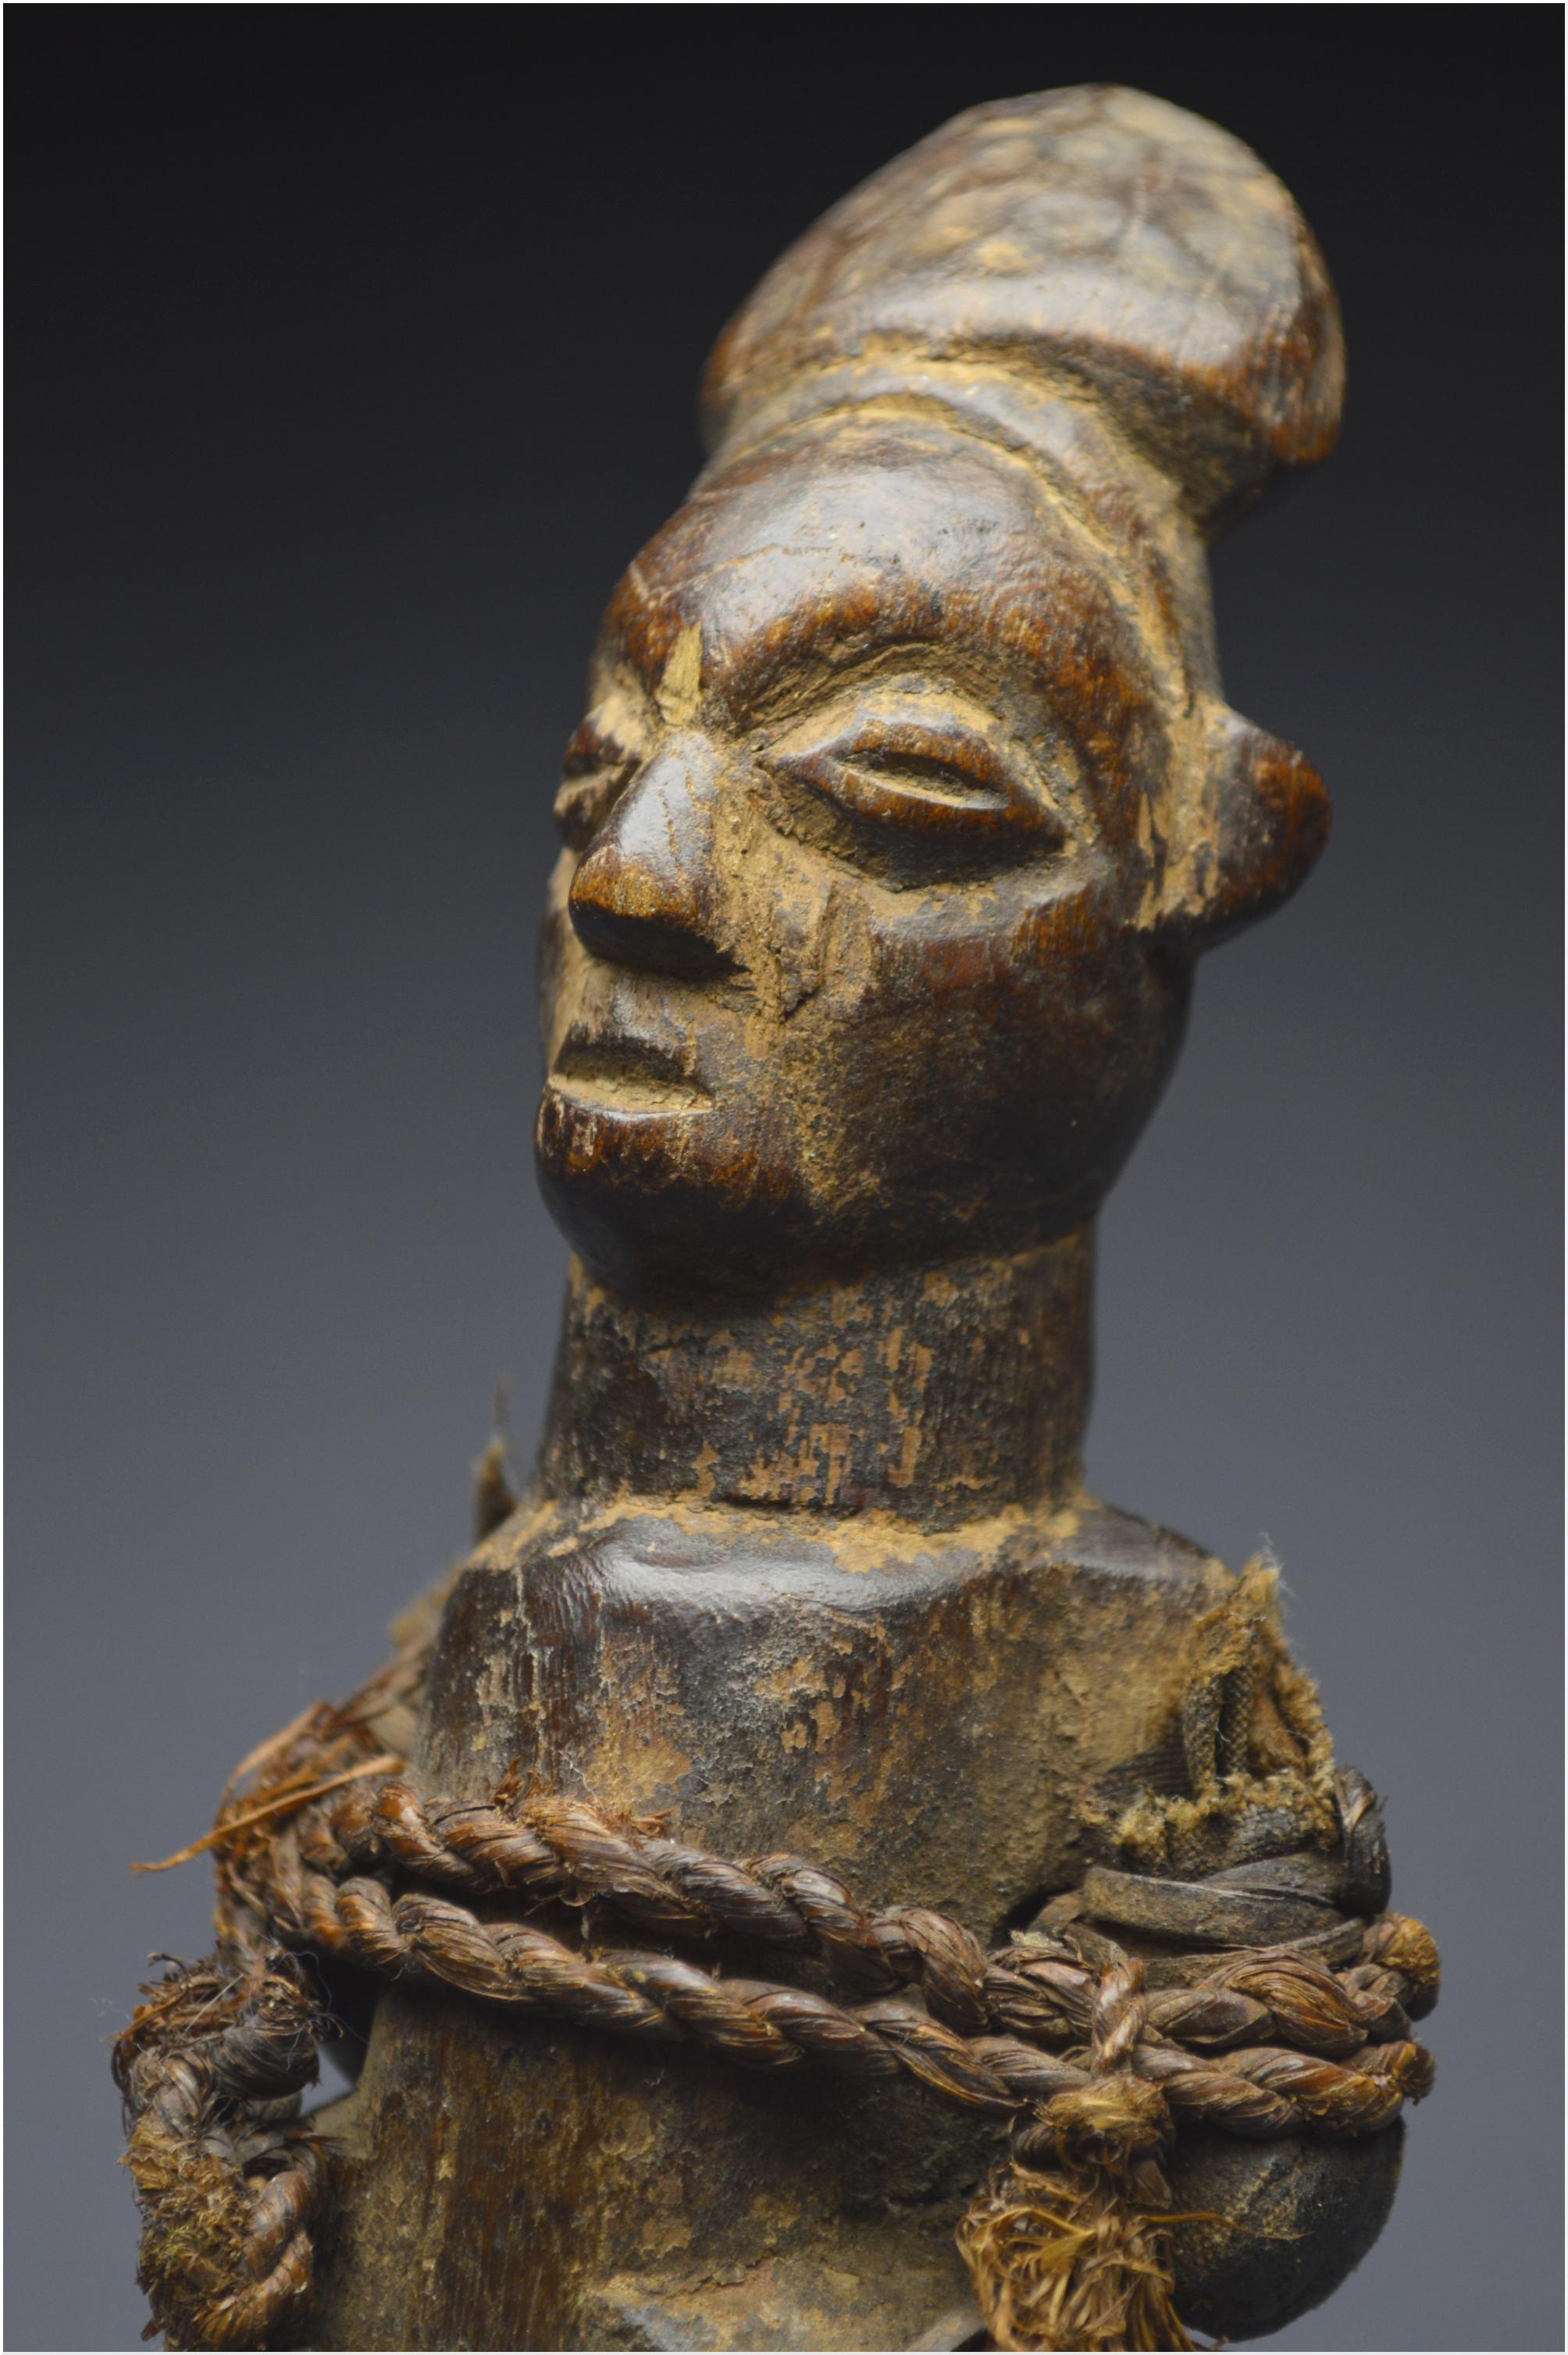 Mid-20th Century, Dem. Rep. Congo, Teke Culture, Ancient Ancestor Fetish 3